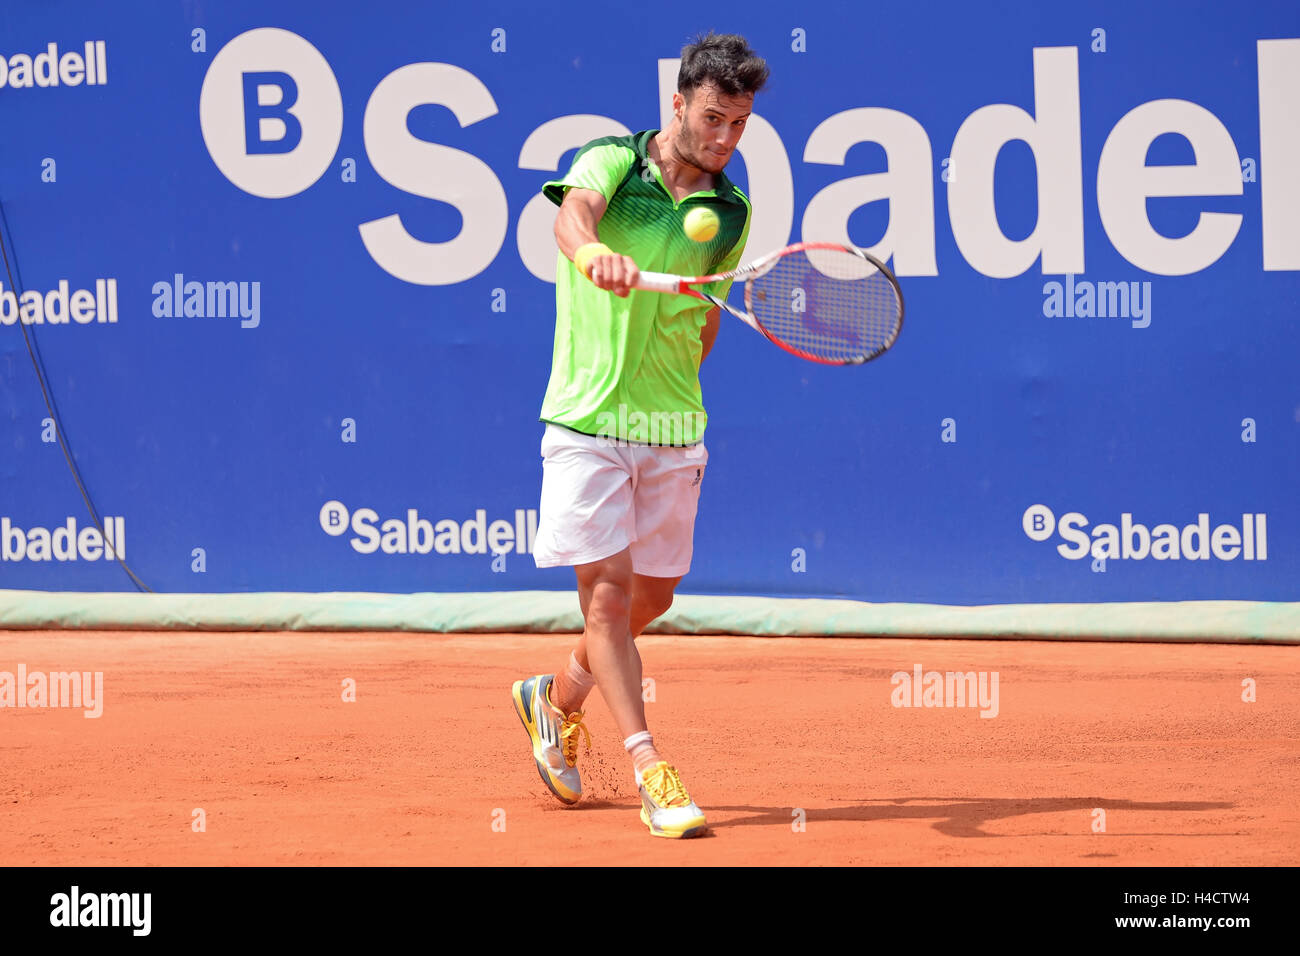 Barcelone - APR 18 : Javier Marti (joueur de tennis) joue à l'ATP Open de  Barcelone Banc Sabadell Conde de Godo tournament Photo Stock - Alamy